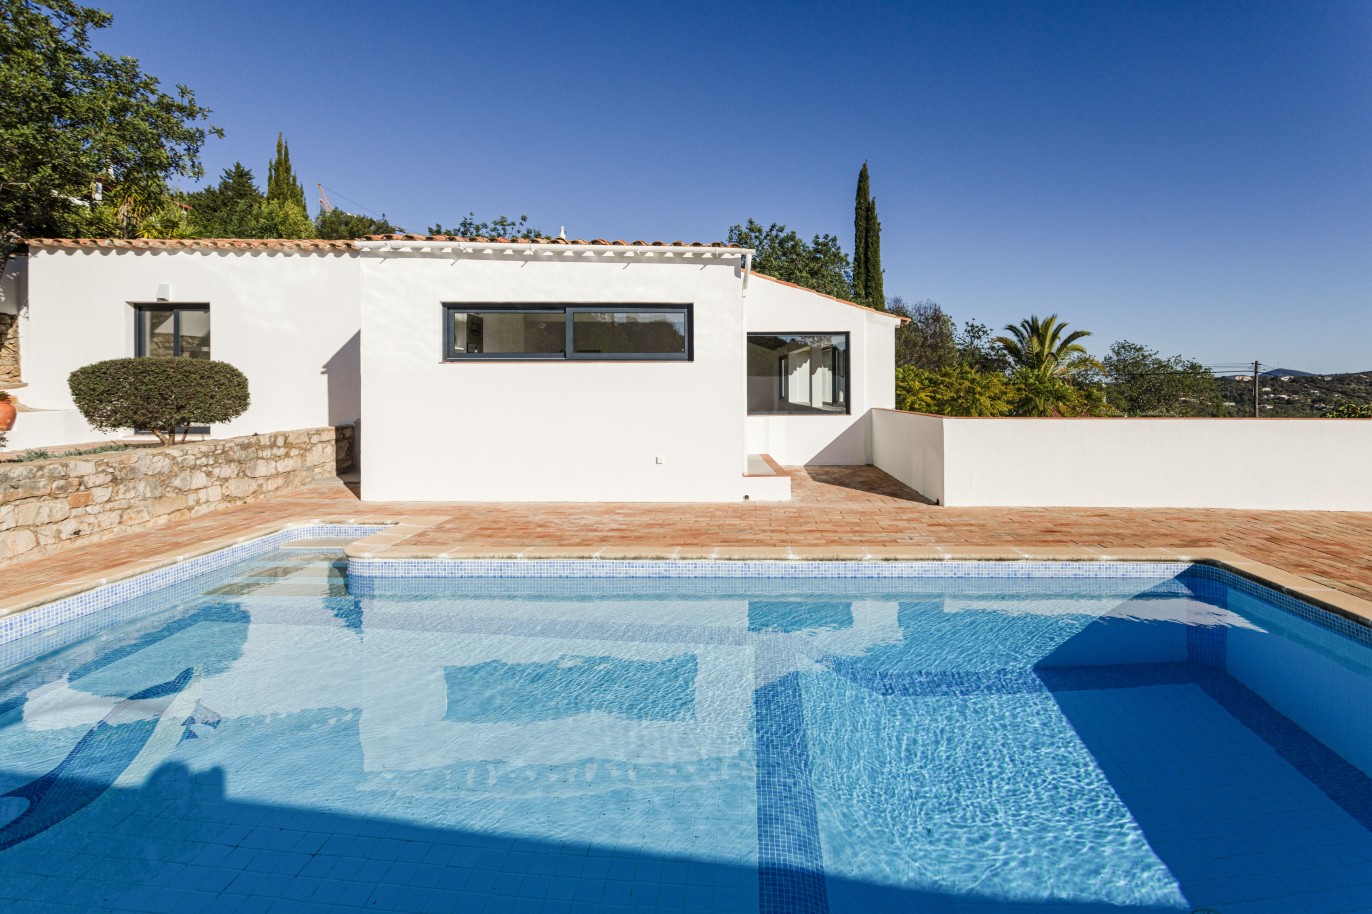 3 bedroom villa with sea view and pool, for sale in Santa Barbara, Algarve_246327